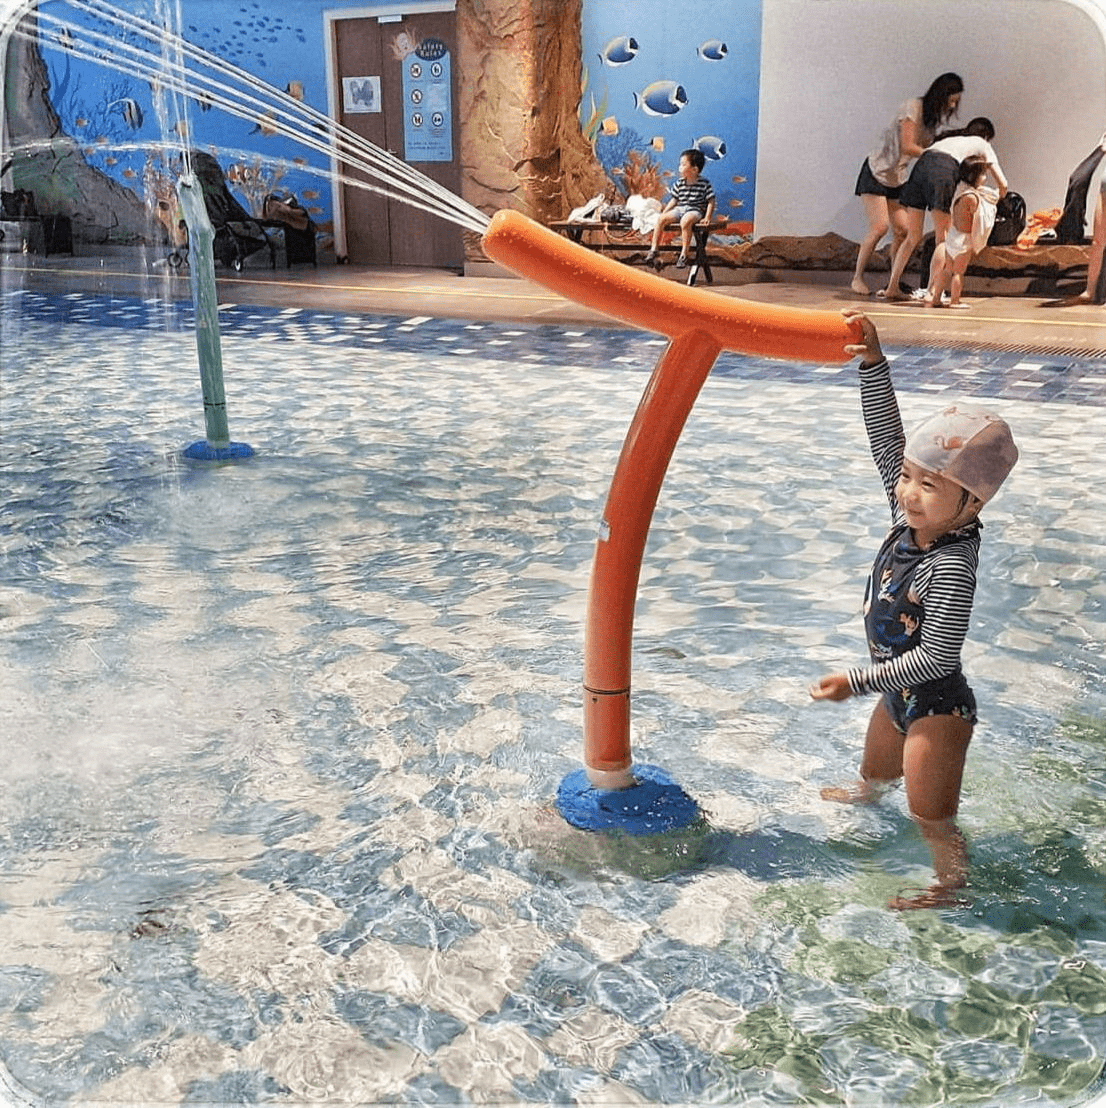 Splash @ Kidz Amaze Indoor Water Playground